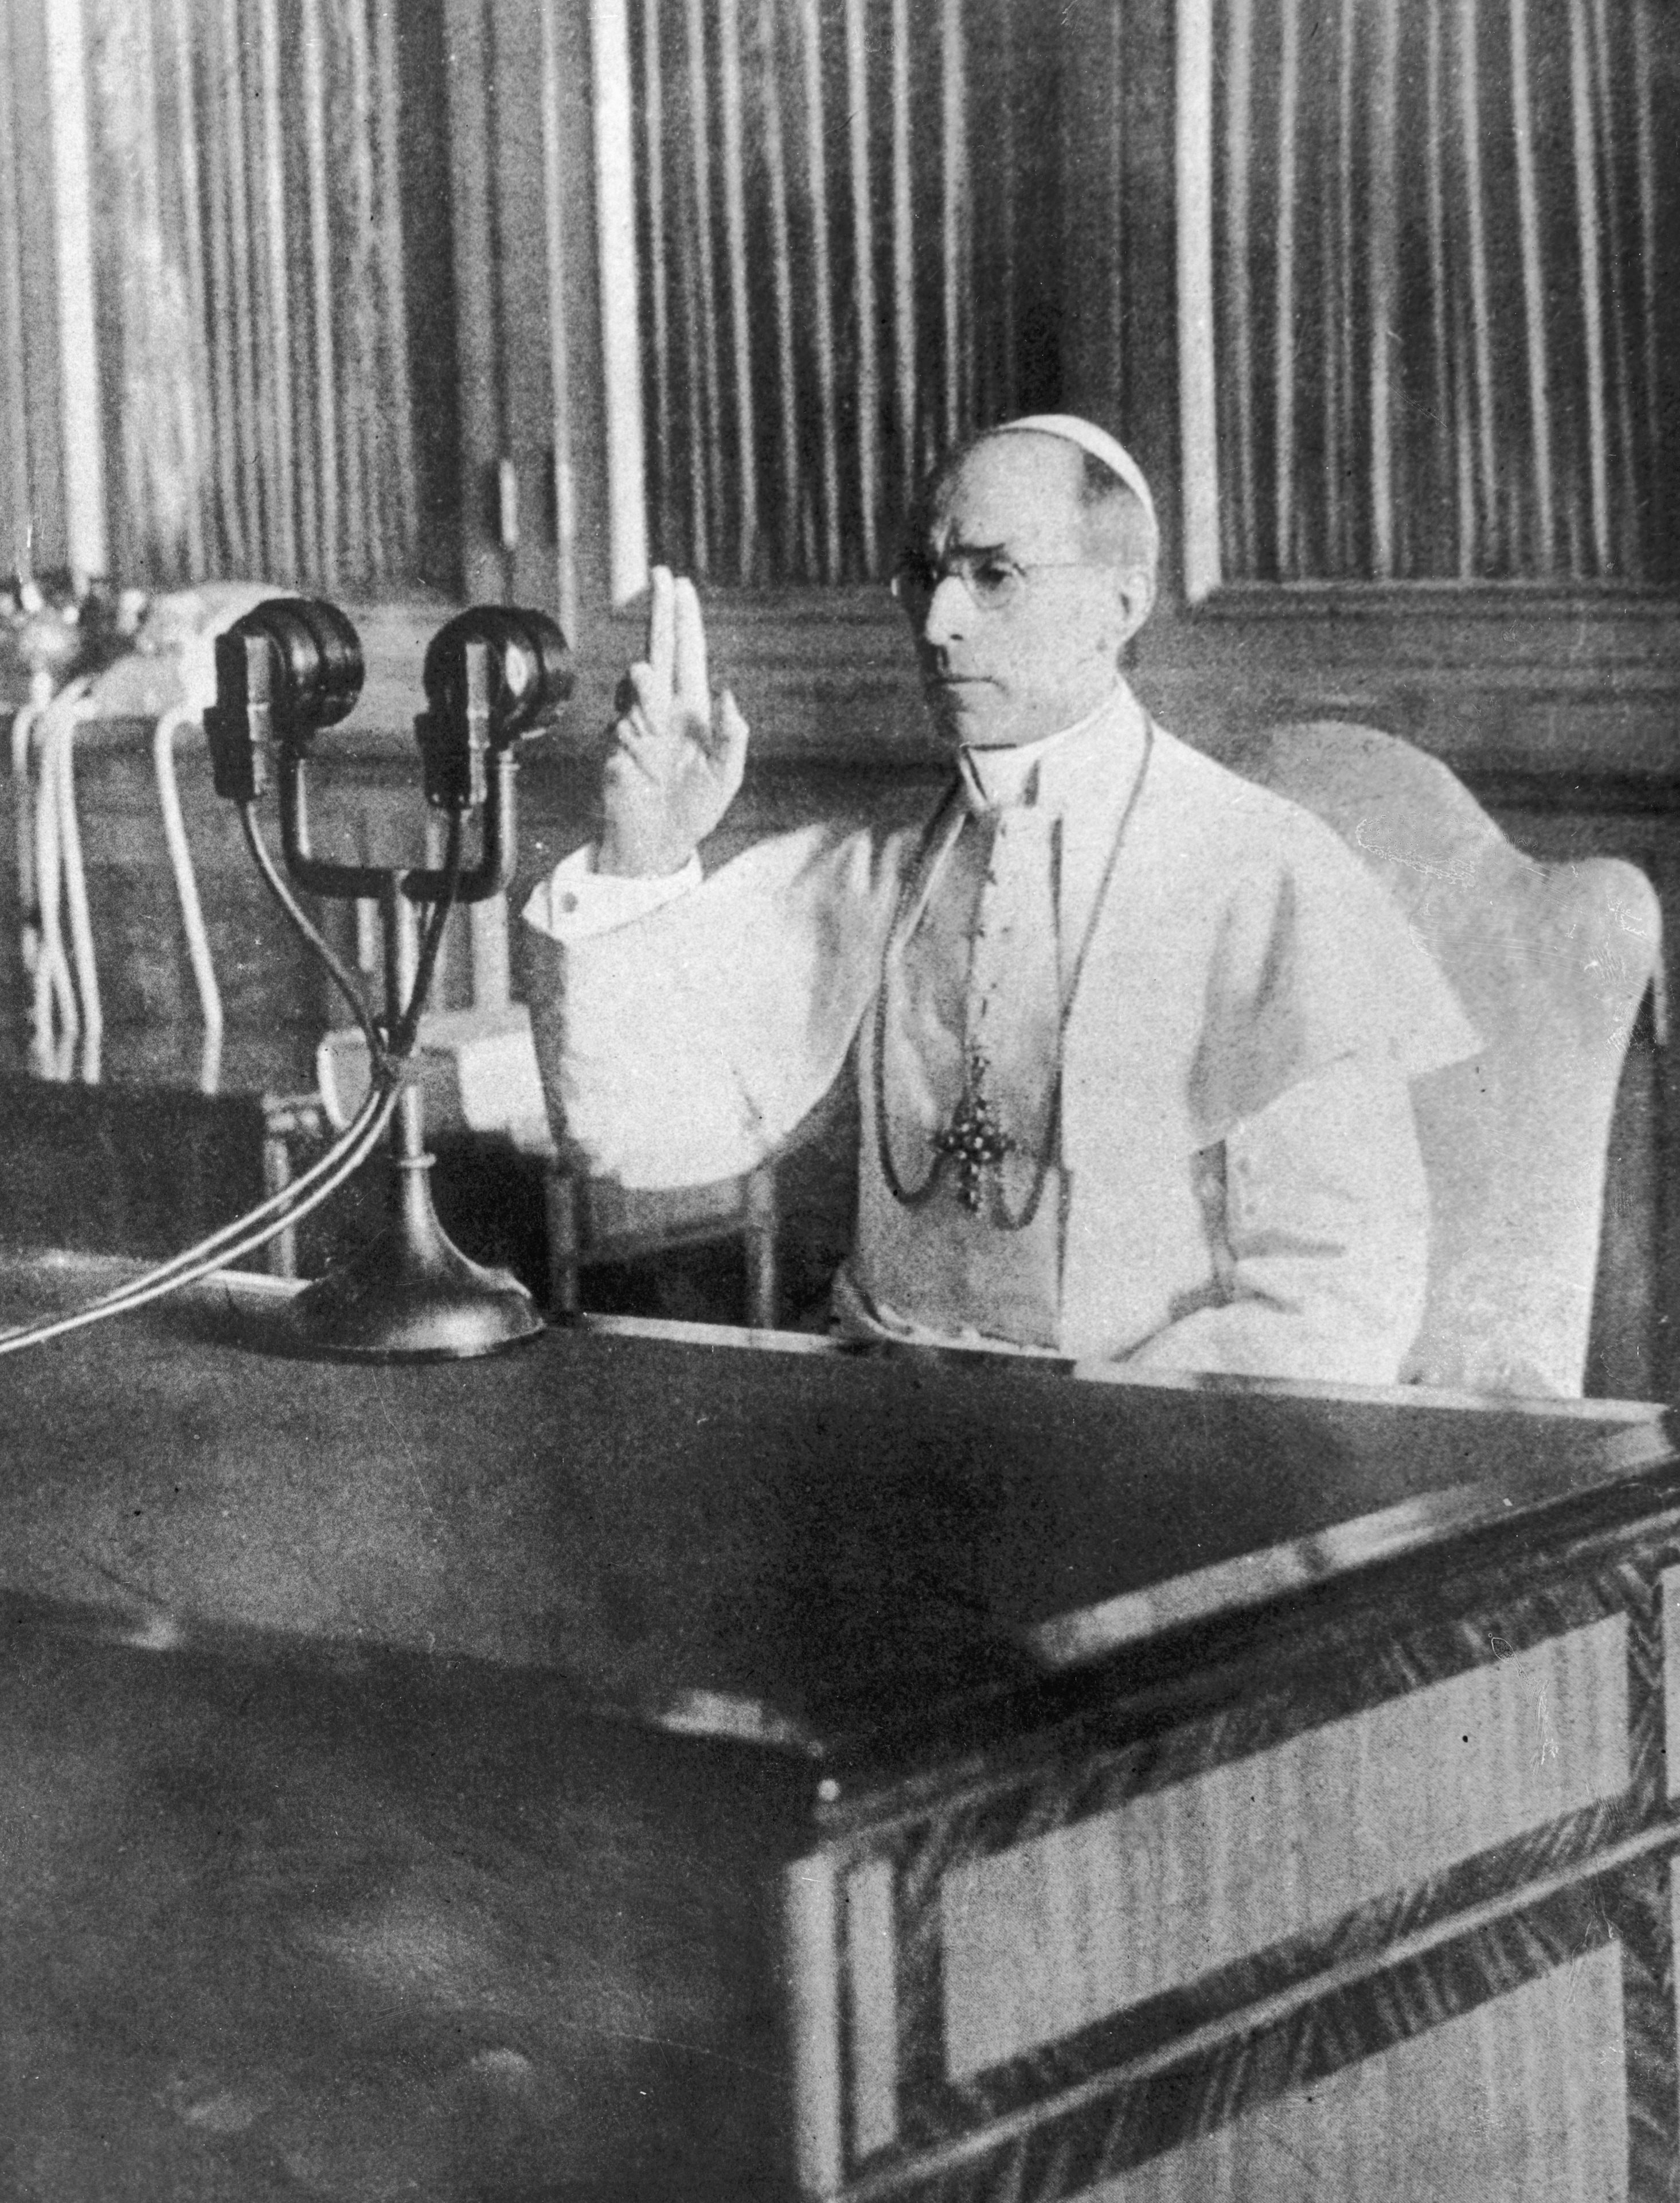 Il papa in uno dei suoi messaggi radiofonici: alcuni sono passati alla storia, come quello del 24 agosto 1939 rivolto ai governanti e ai popoli nell’imminente pericolo della guerra